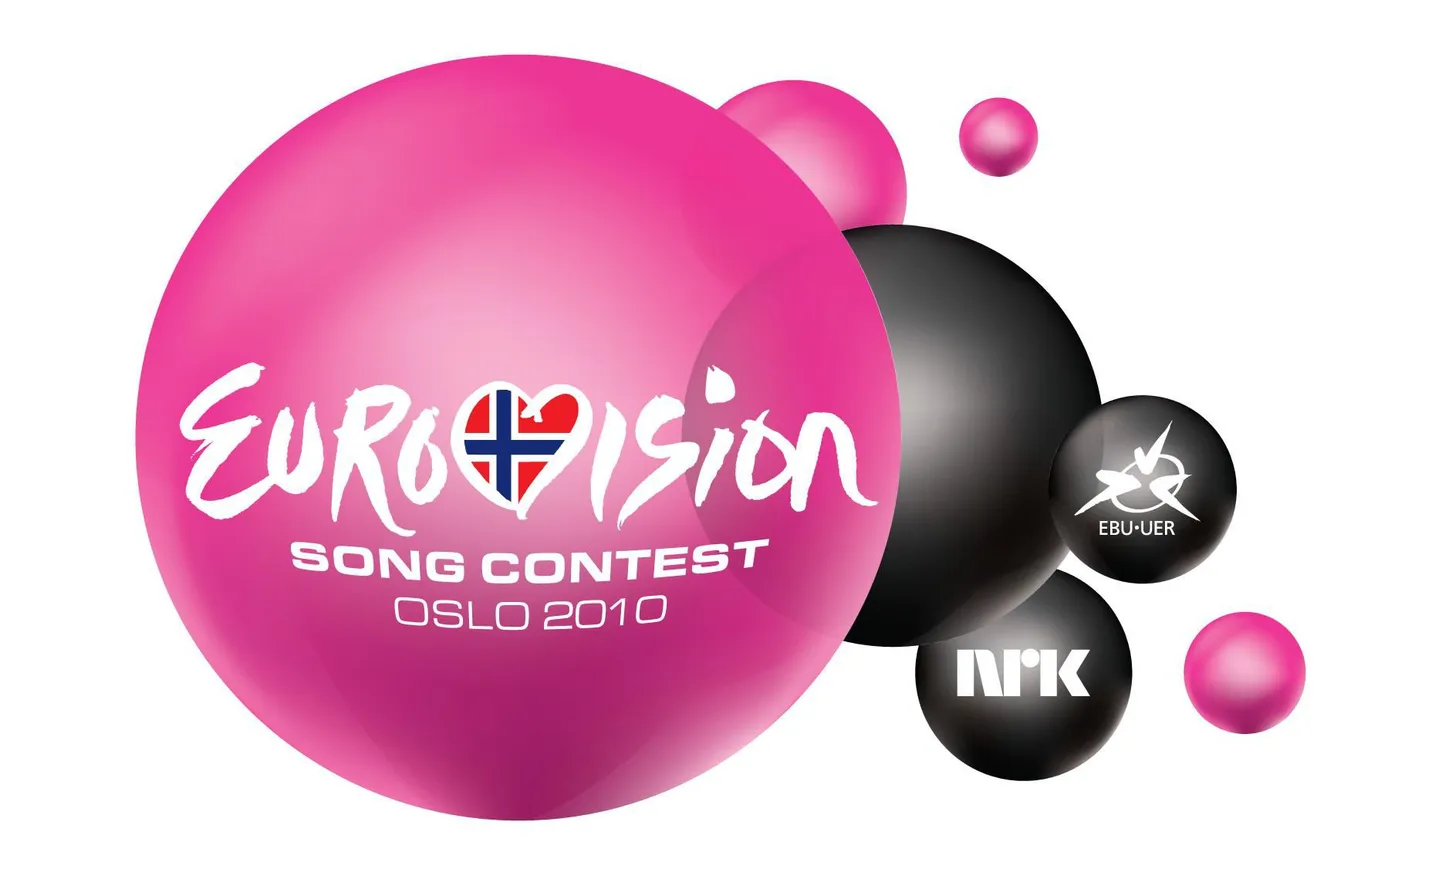 Eurovison 2010 Song Contest Oslo 2010 - Eurovisioon 2010 Oslos